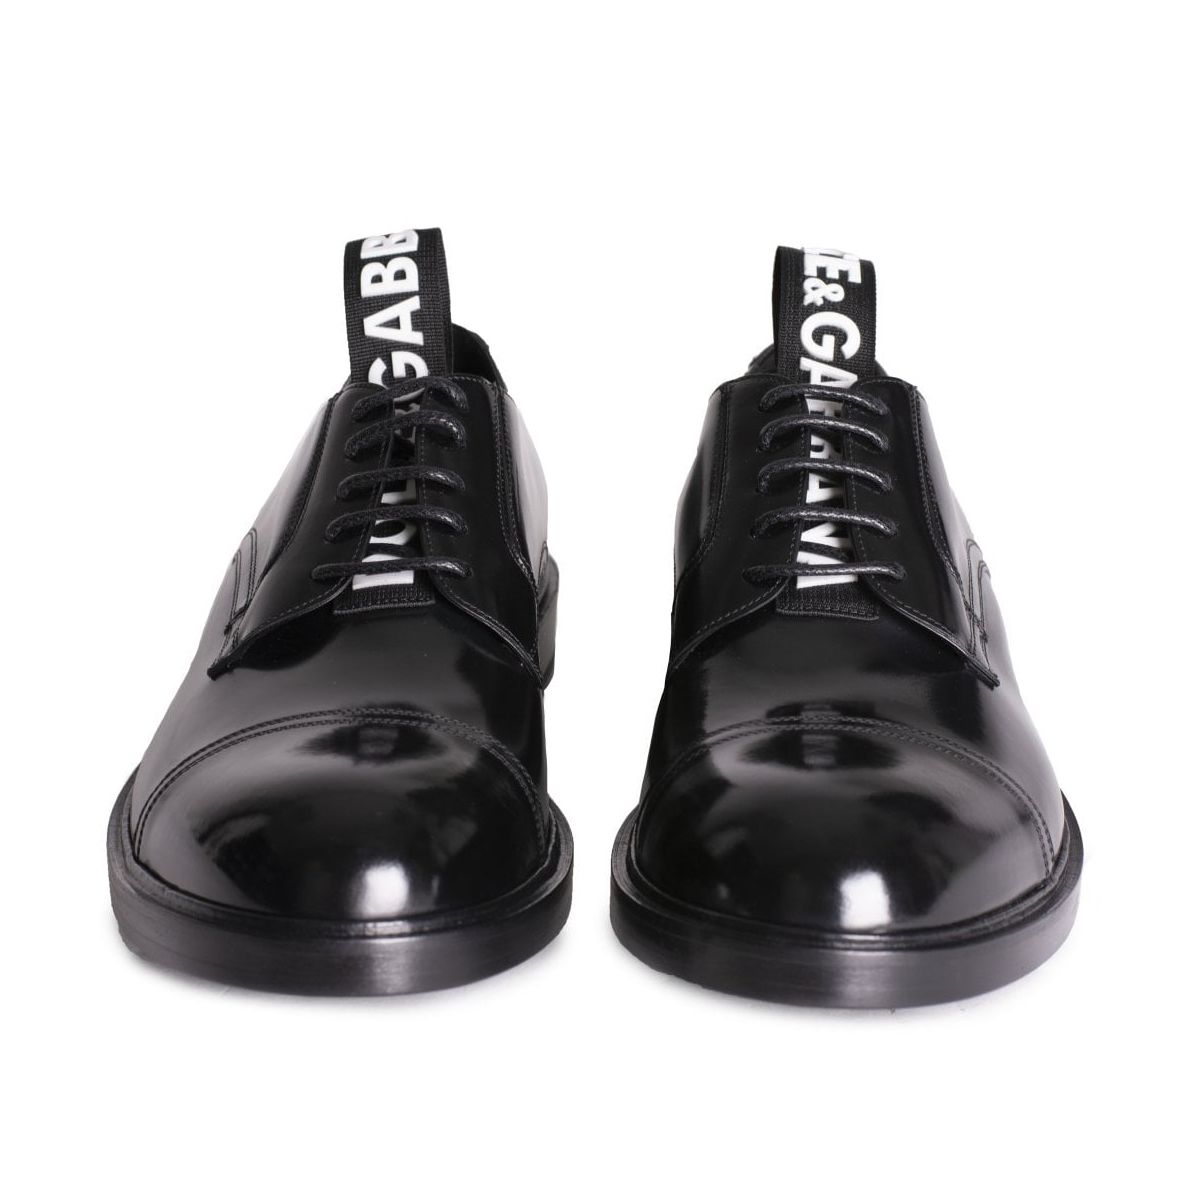 Elegant Calfskin Men's Derby Shoes